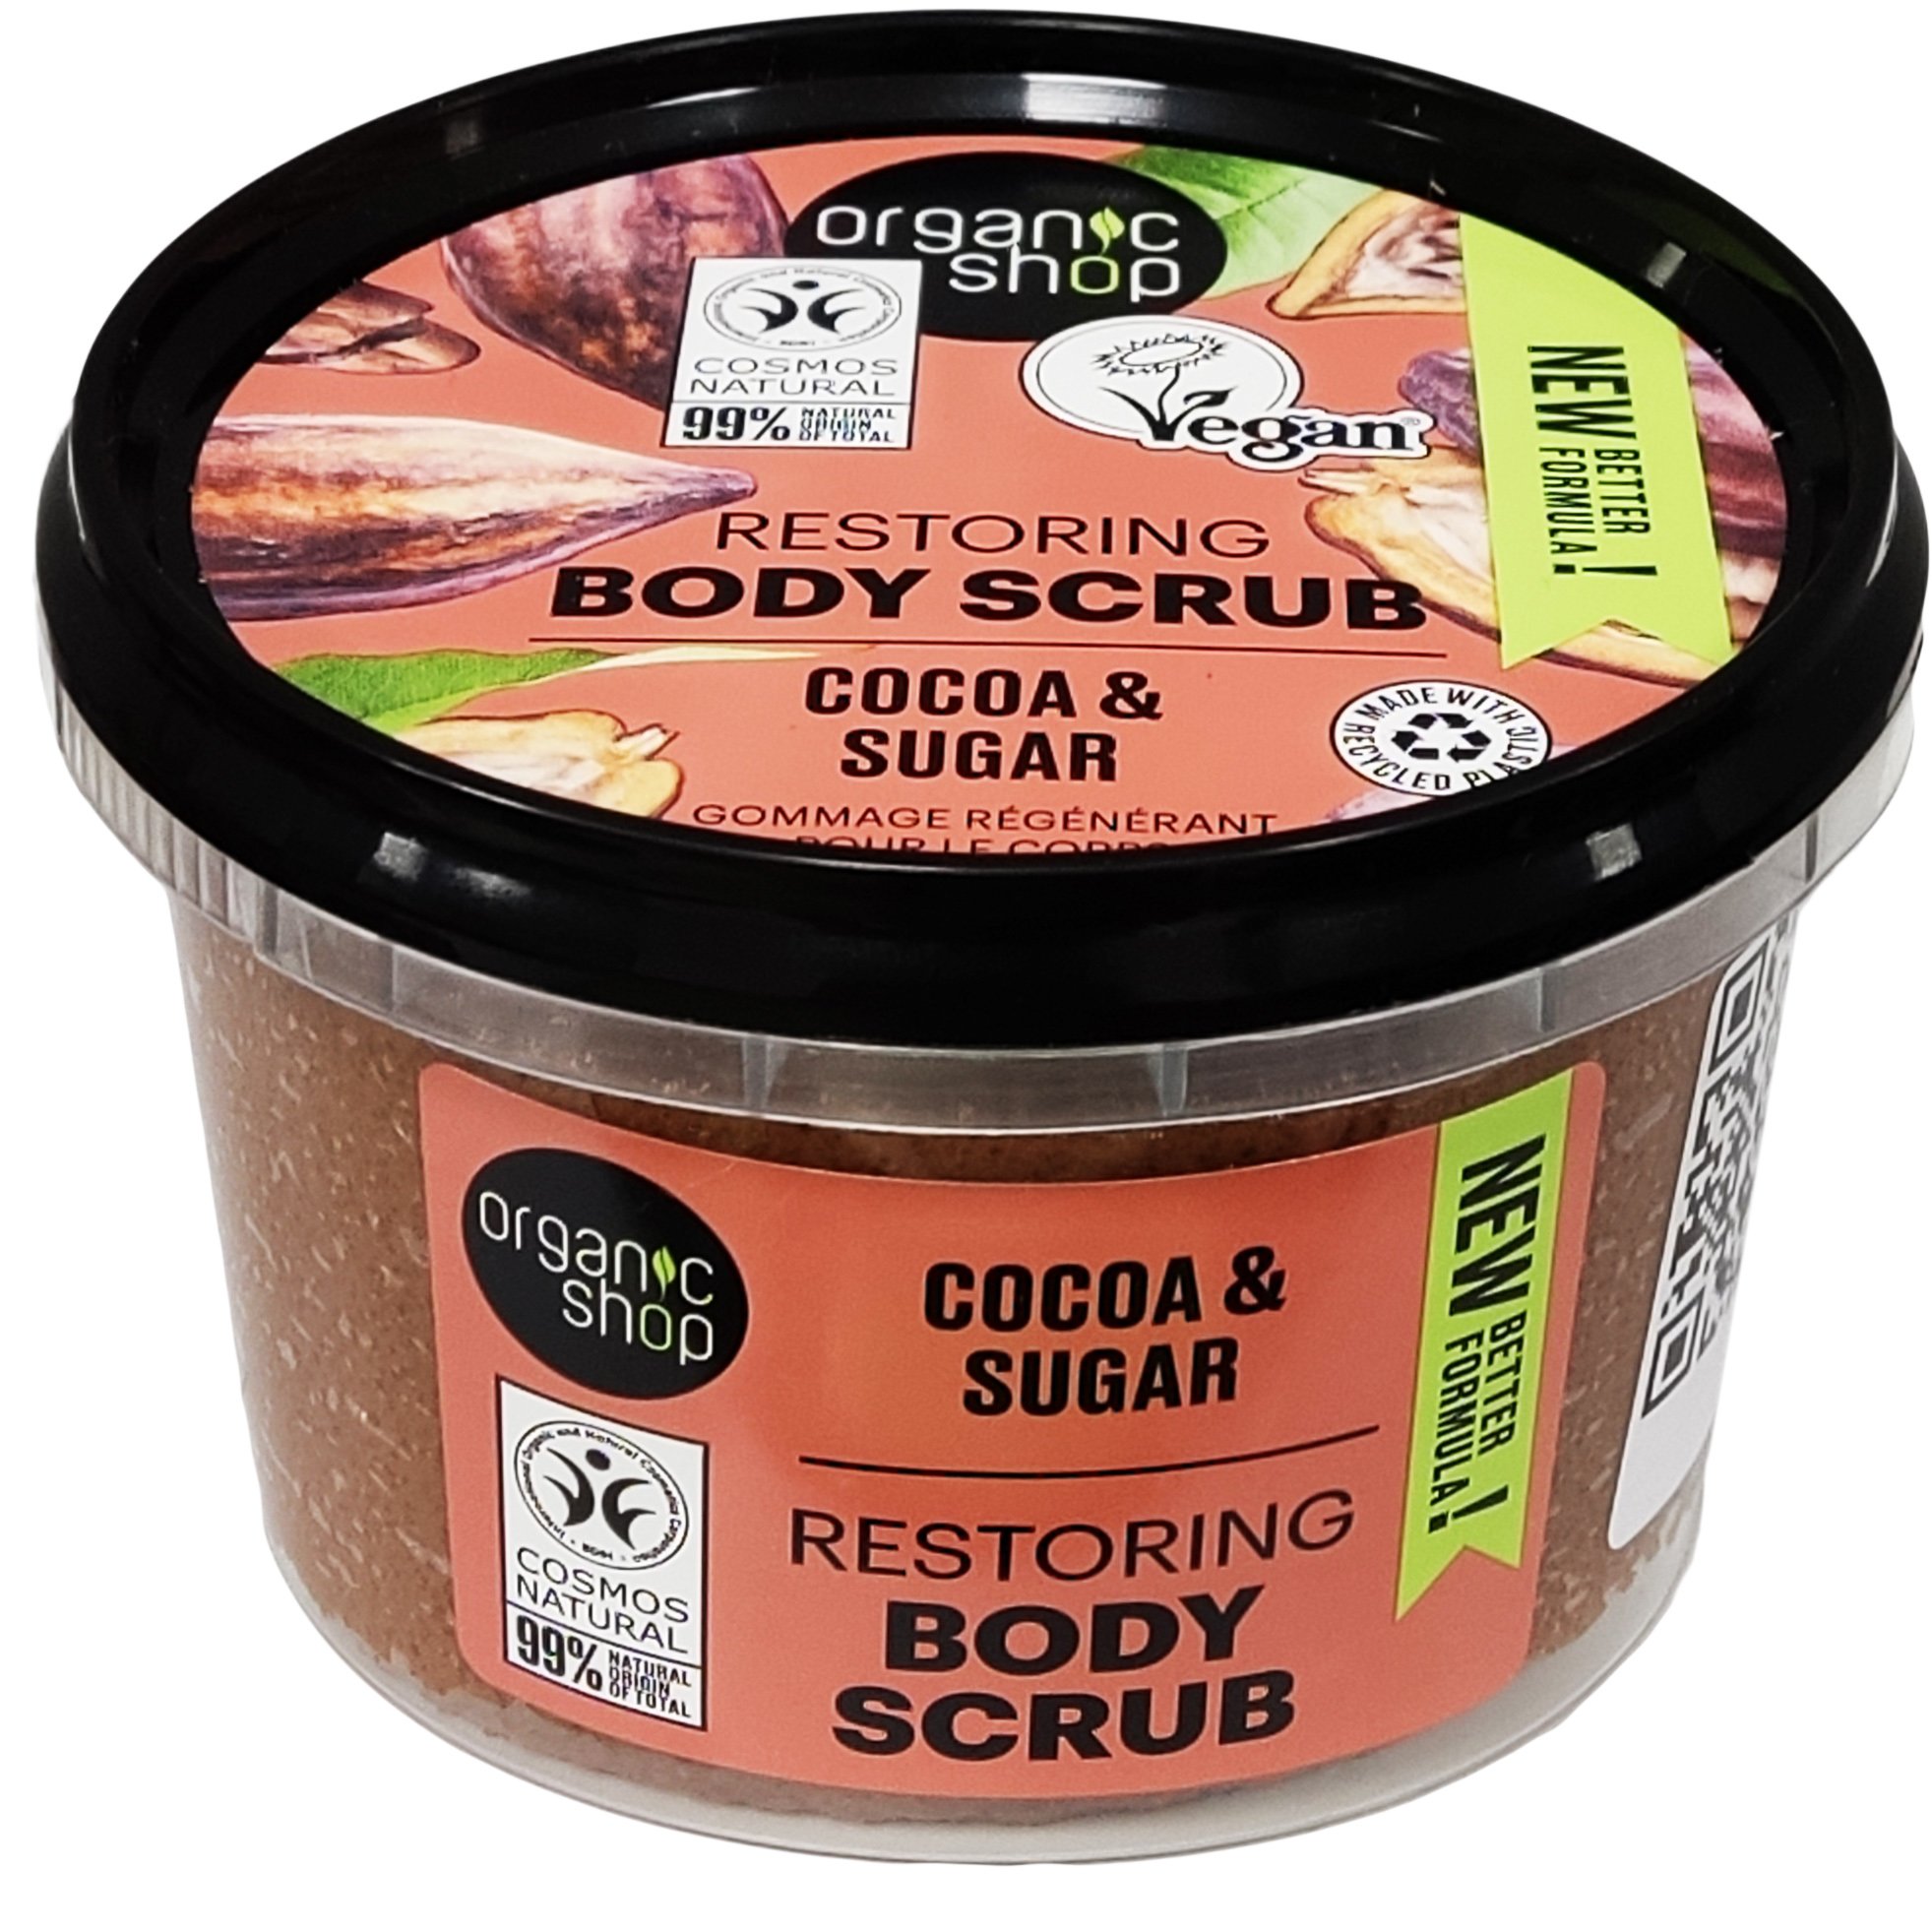 Organic Shop Restoring Body Scrub with Cocoa & Sugar Απολεπιστικό Σώματος με Bitter Κακάο & Ζάχαρη για Άμεση Επαναφορά της Ελαστικότητας του Δέρματος 250ml